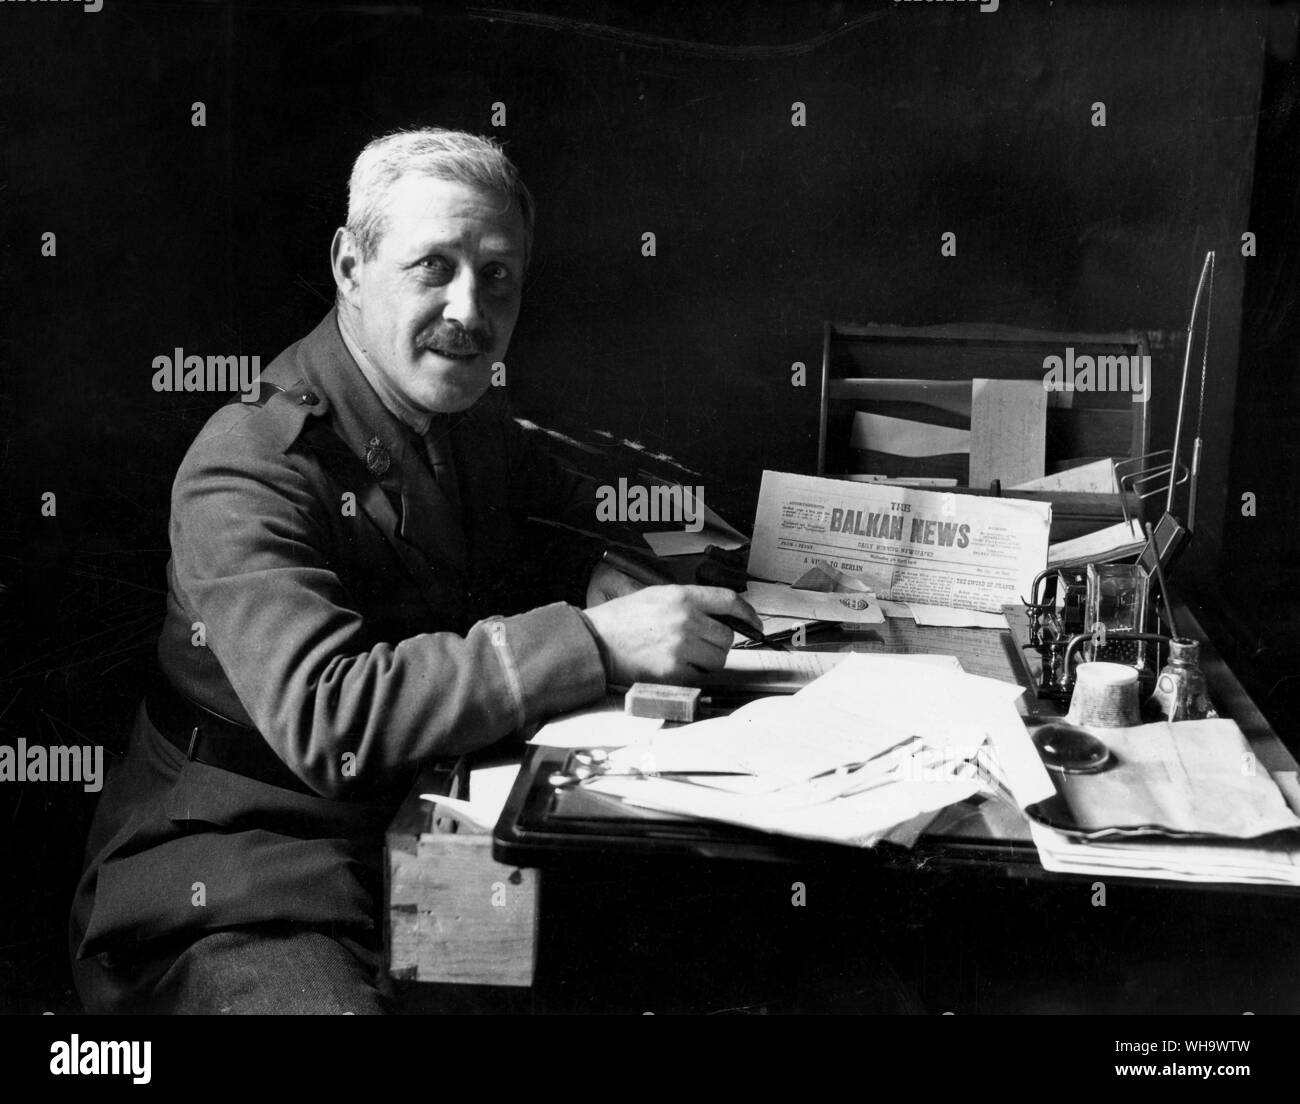 WW1/ Balcani. Il tenente Kinross, il romanziere, nella sedia editoriale del Balkan News. La carta ha una grande circolazione fra le truppe alleate. Foto Stock